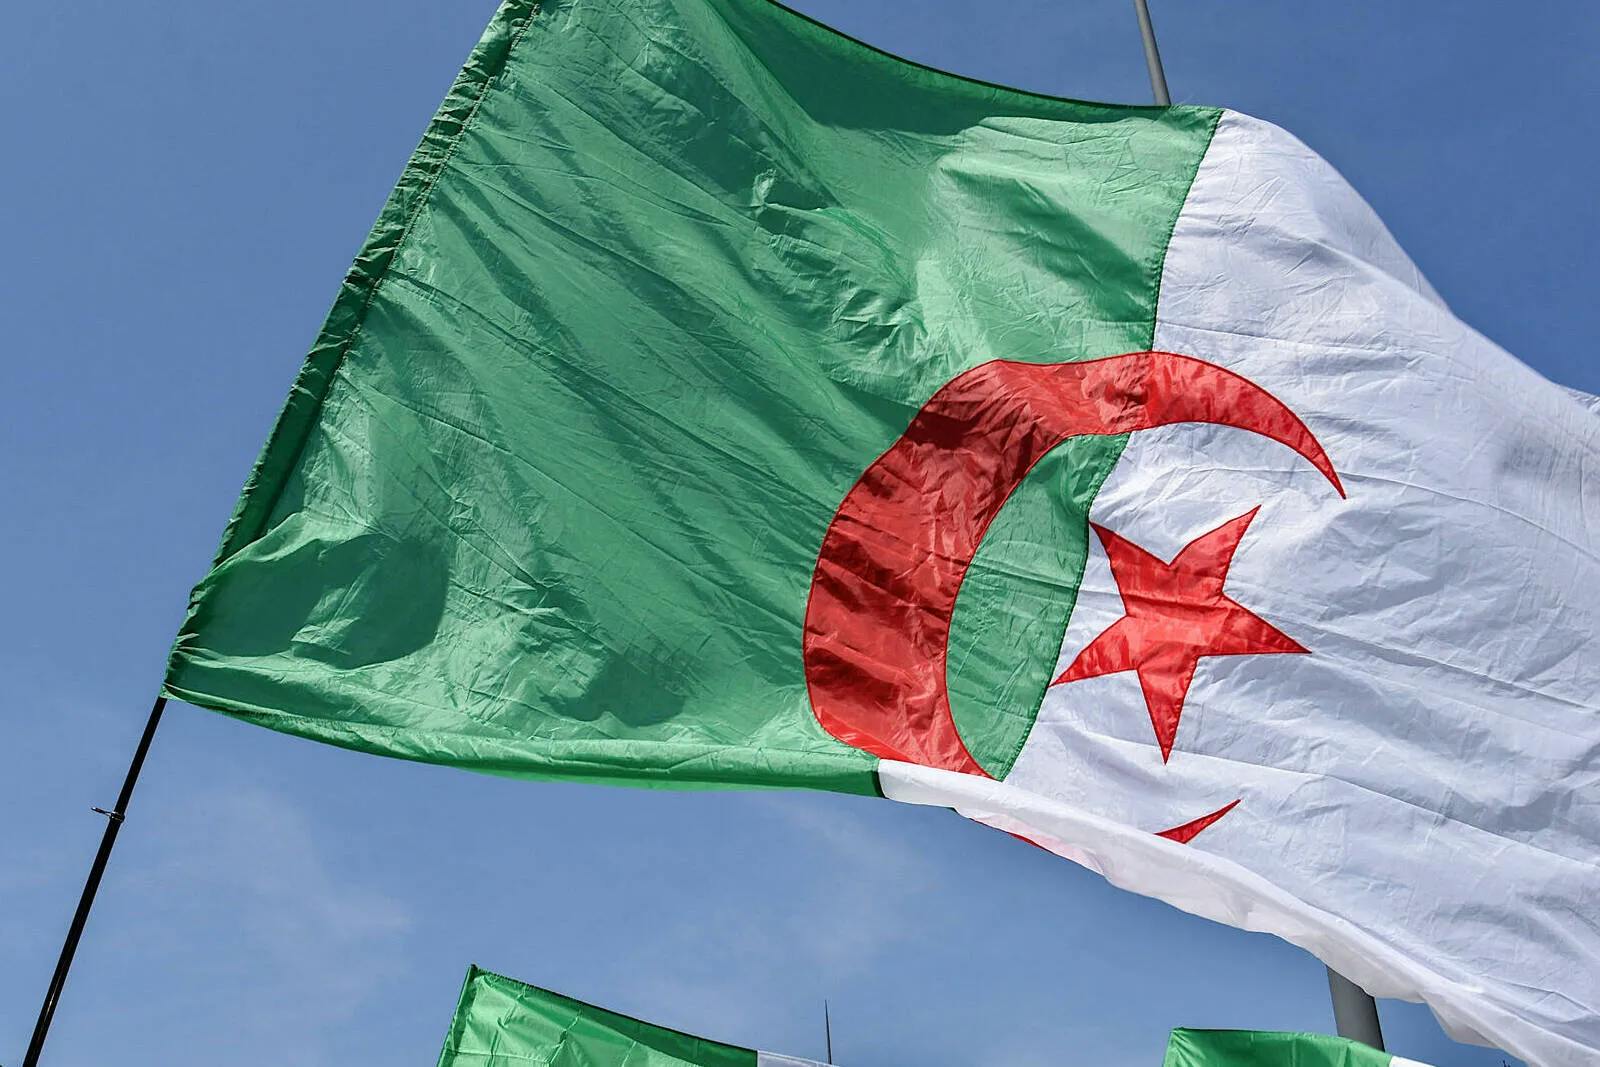 Frankreich: Algerische Jugendliche stürmen Dorffest und stoßen auf unerwartete Reaktion